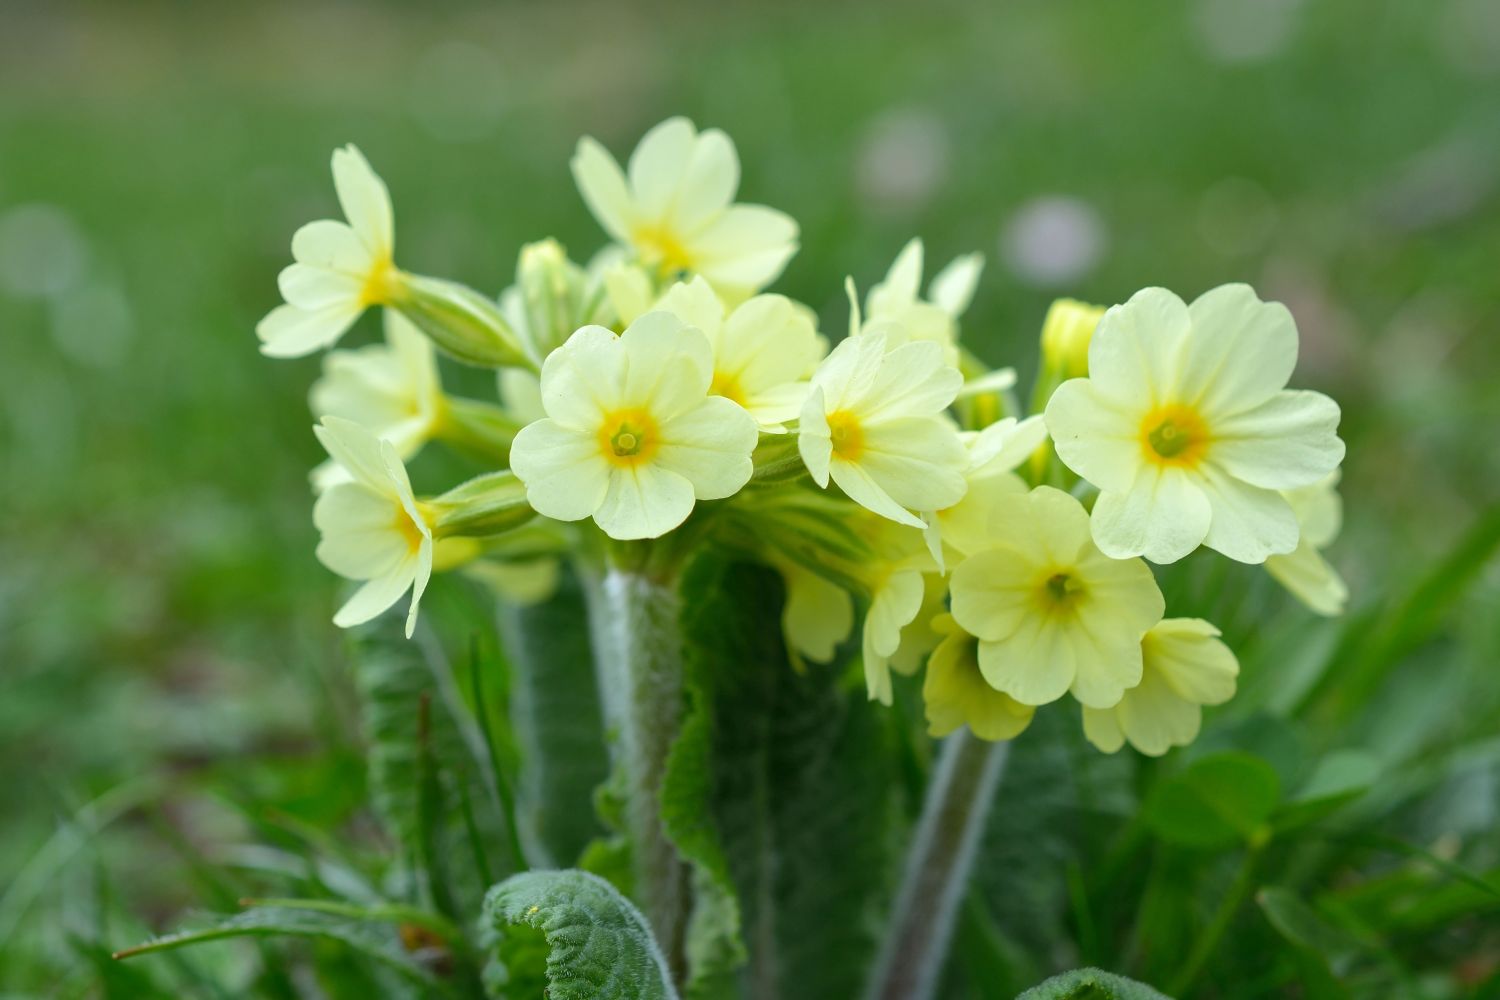 Delicately yellow primrose flowers